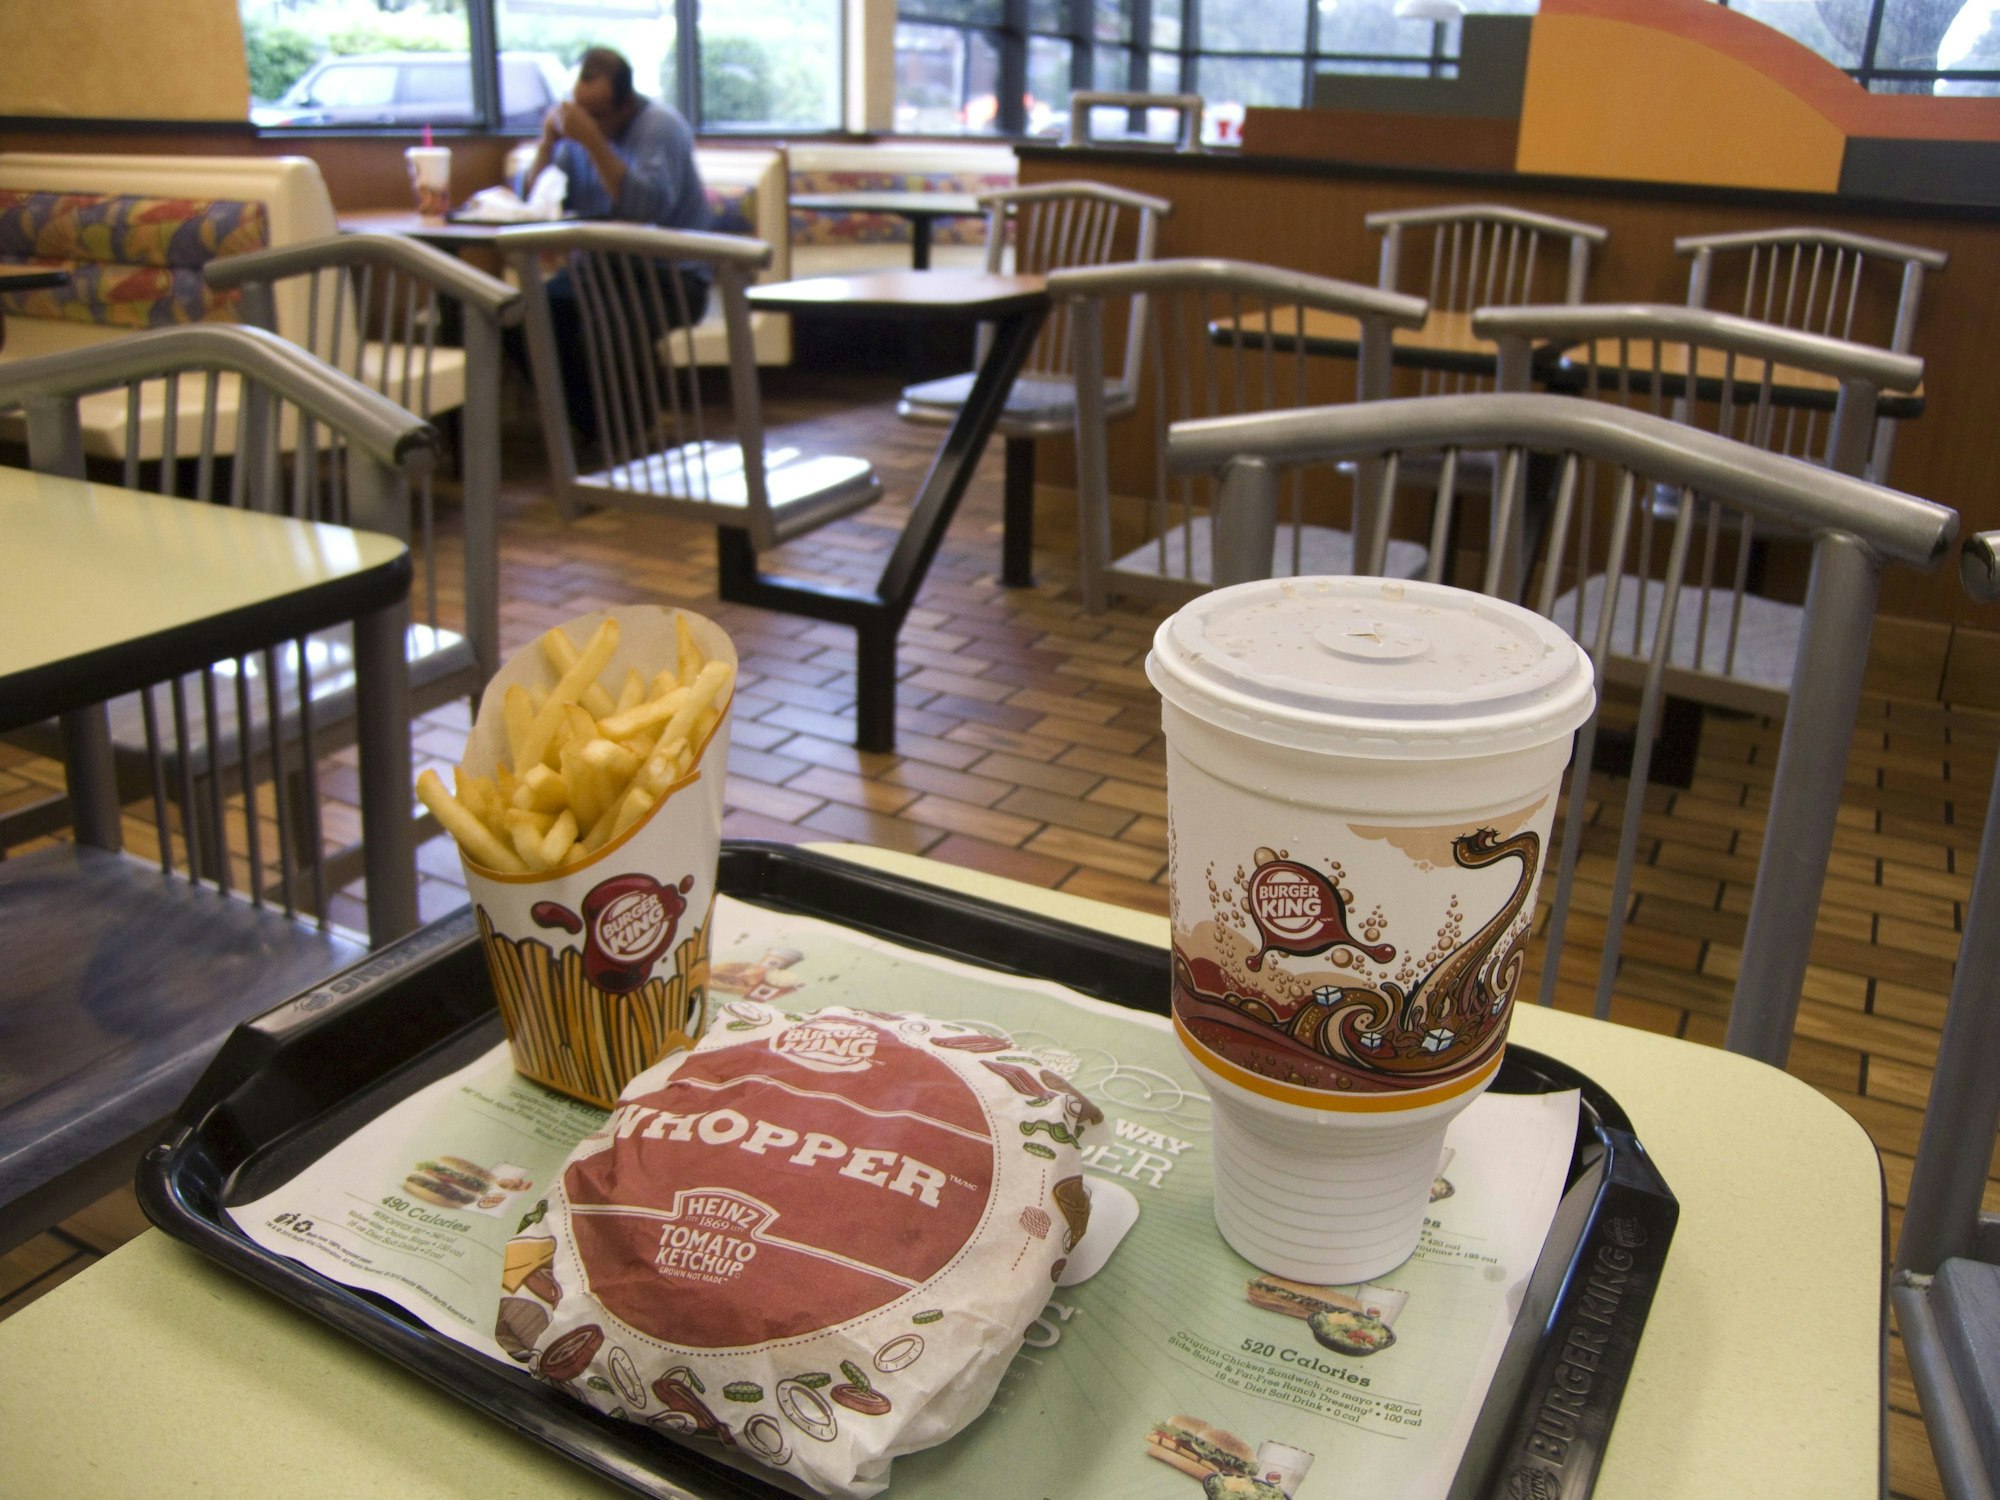 Unser Archivfoto (2010) zeigt eine Burger-King-Filiale in Glenview im US-Bundesstaat Illinois. Zu sehen ist ein Menü mit Pommes, Cola und Burger.